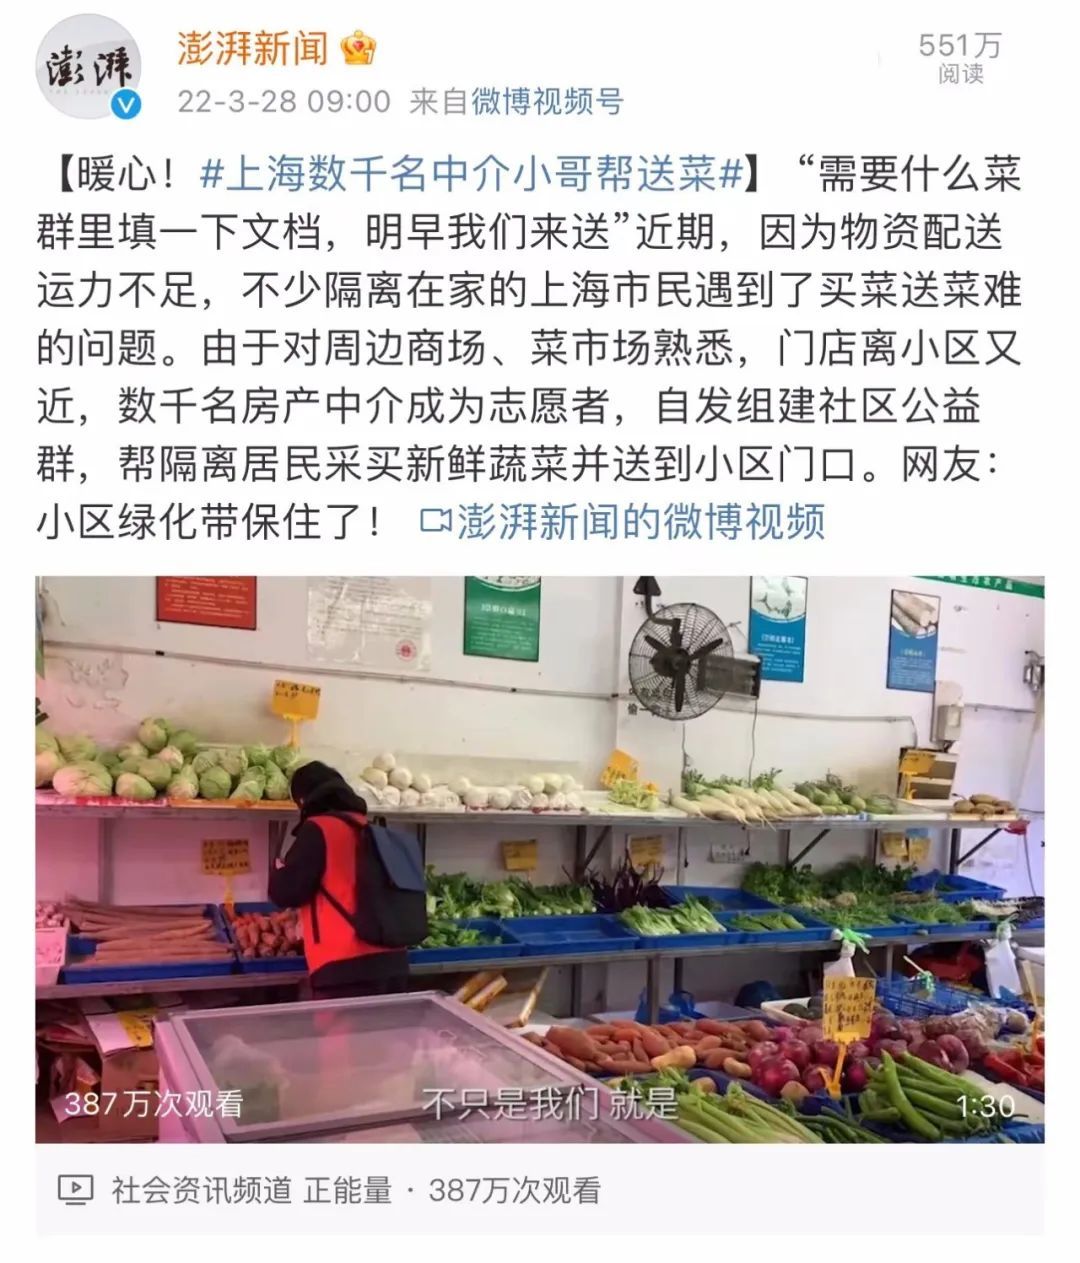 这家上海公司3700名员工志愿送菜跑腿 公司 支持 7天可获额外年假 